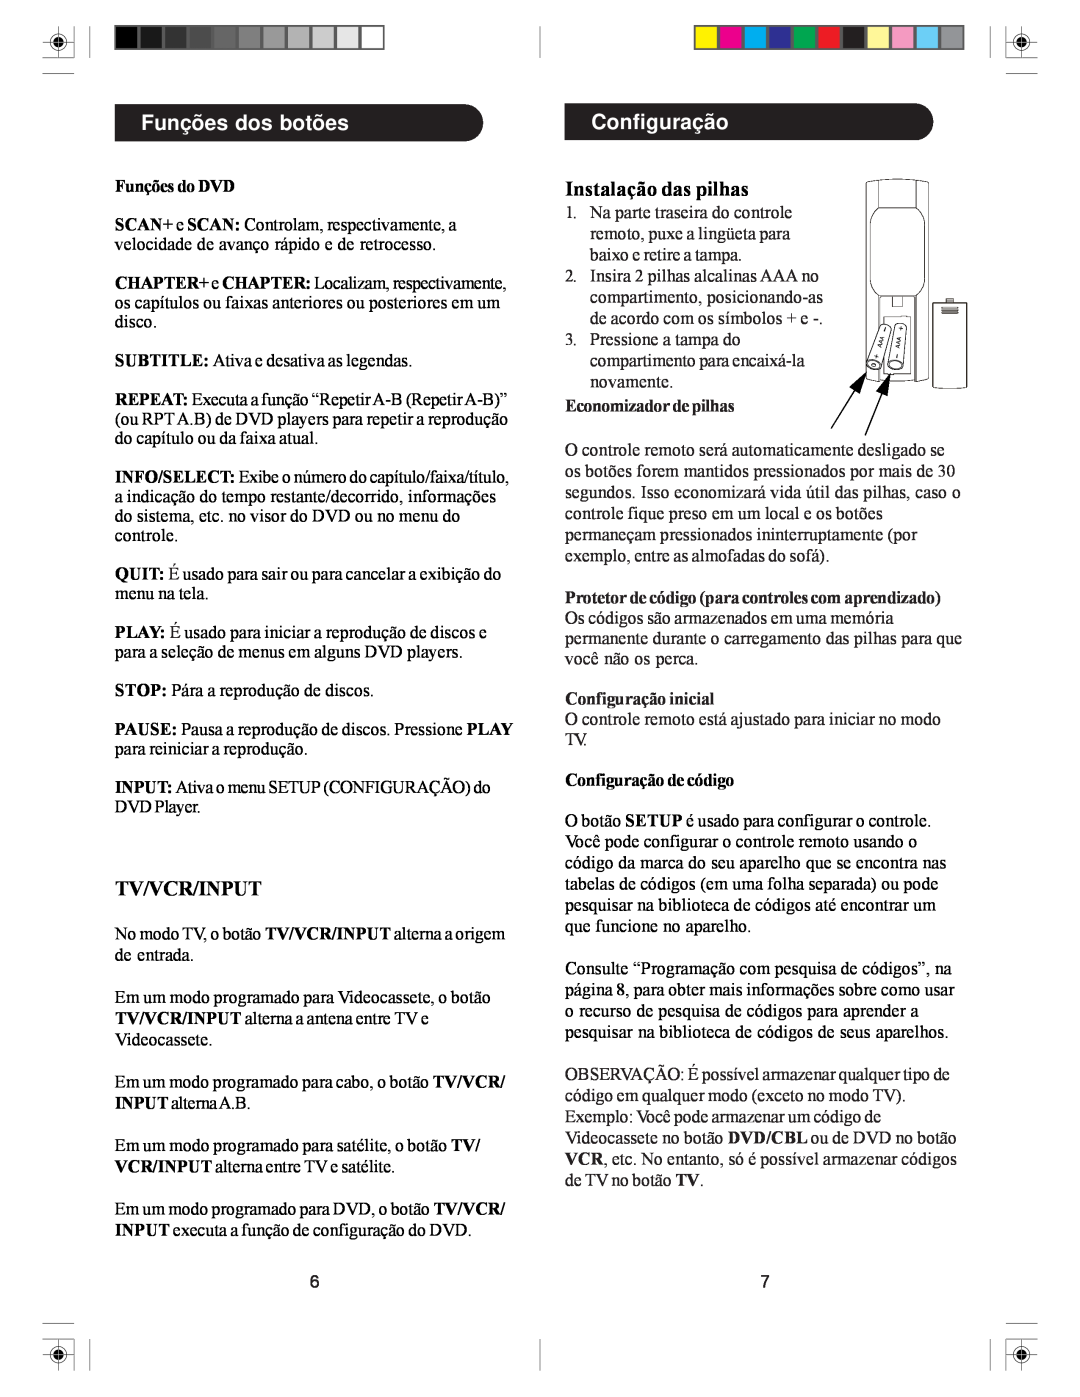 Philips SRU5030/55 owner manual Configuração, Funções dos botões, Tv/Vcr/Input, Instalação das pilhas, Funções do DVD 